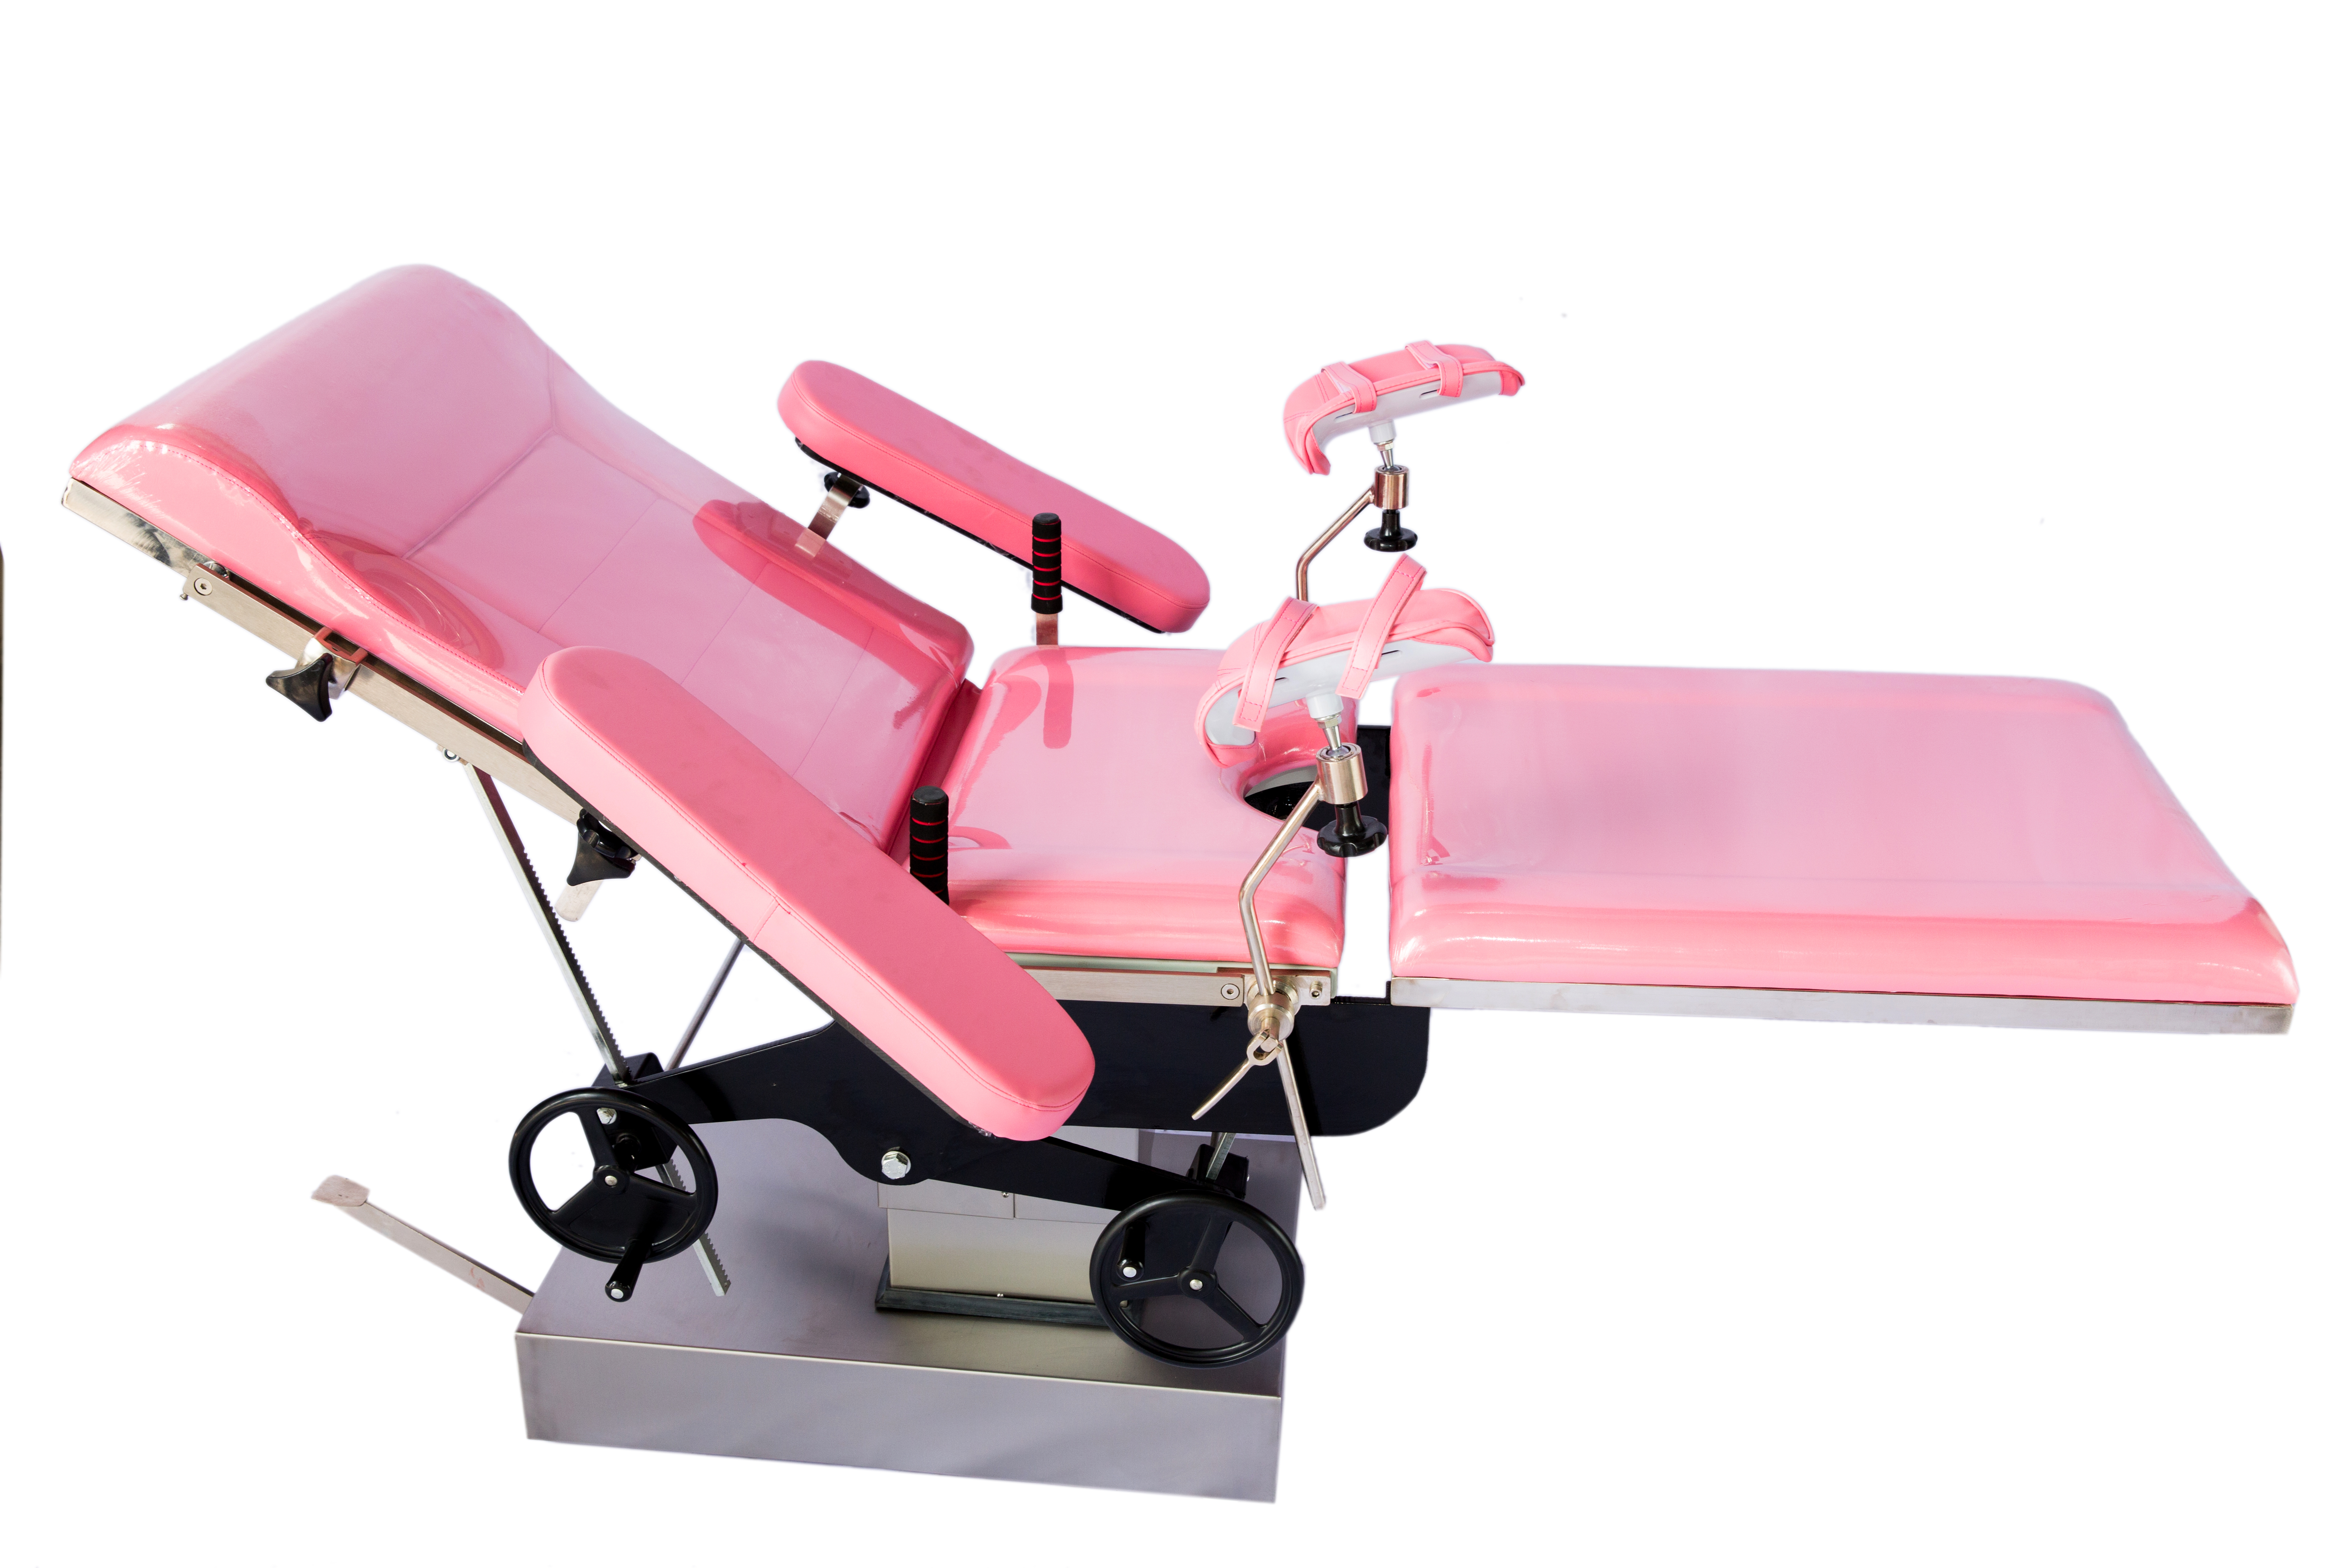 Lit d'opération gynécologique hydraulique manuel Table d'opération Obstétrique Lit de maternité manuel Table chirurgicale d'accouchement obstétrique